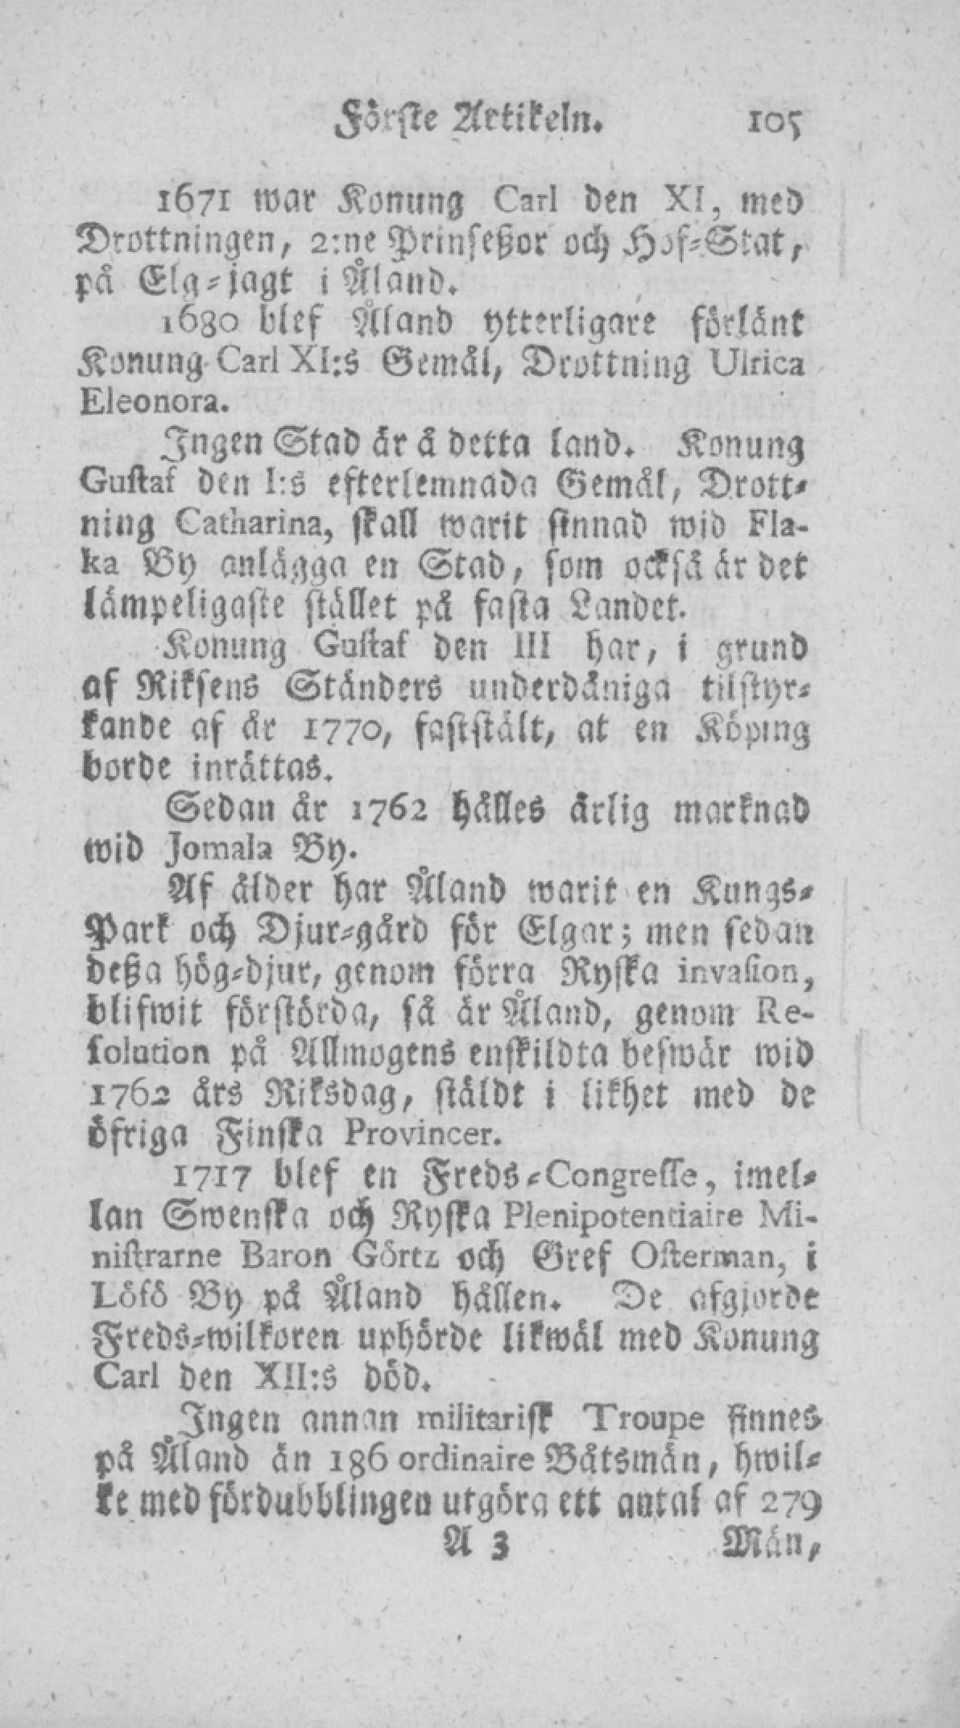 Konung Guftaf den 11! har, i grund af RiksenS tänders underdämga tiistyrtande af är 1770, faststält, at en Köping borde inrättas. Sedan är 1762 hälles ärlig marknad Wid Iomala By.